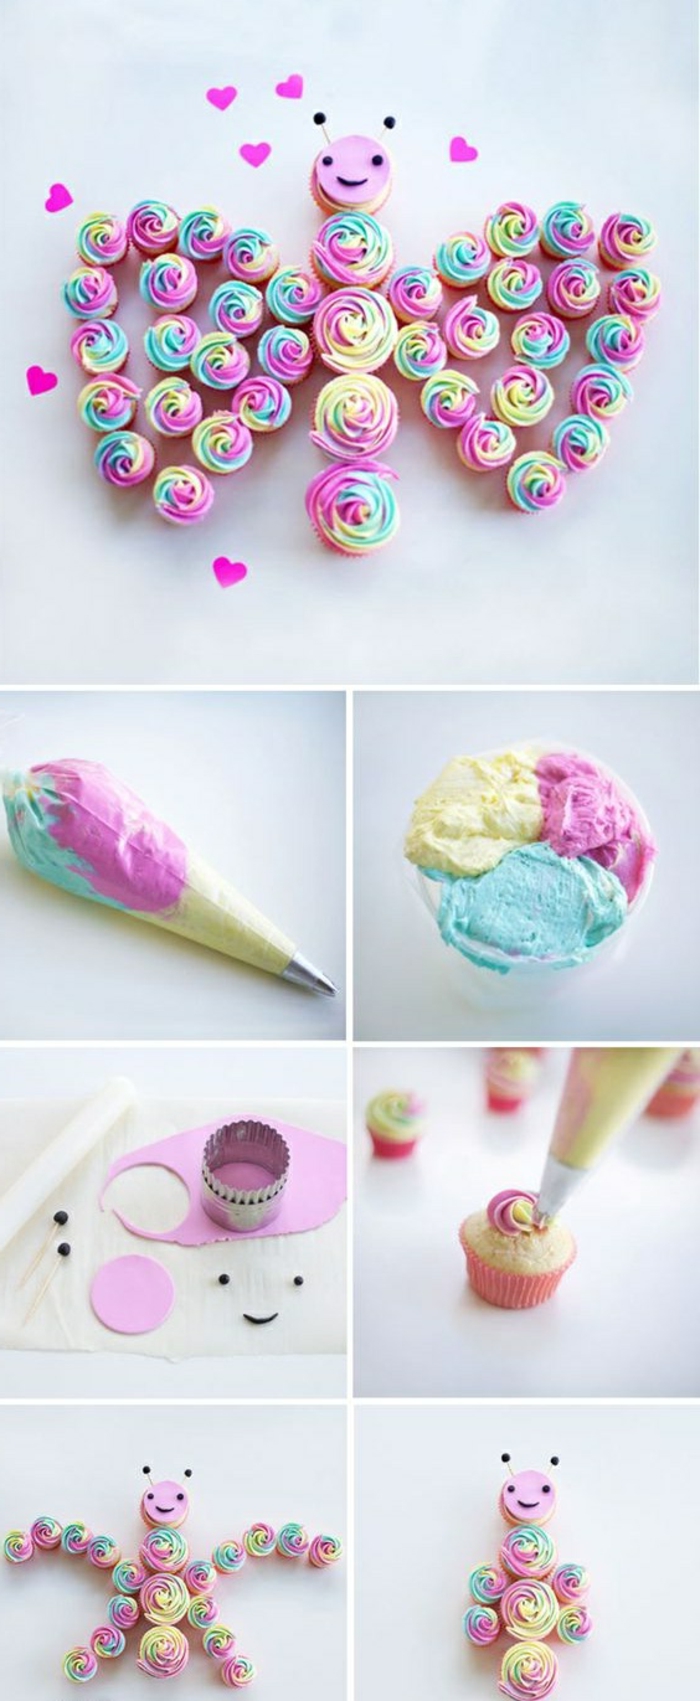 cupcakes dekorieren mit sahne in verschiedenen farben, schmetterling